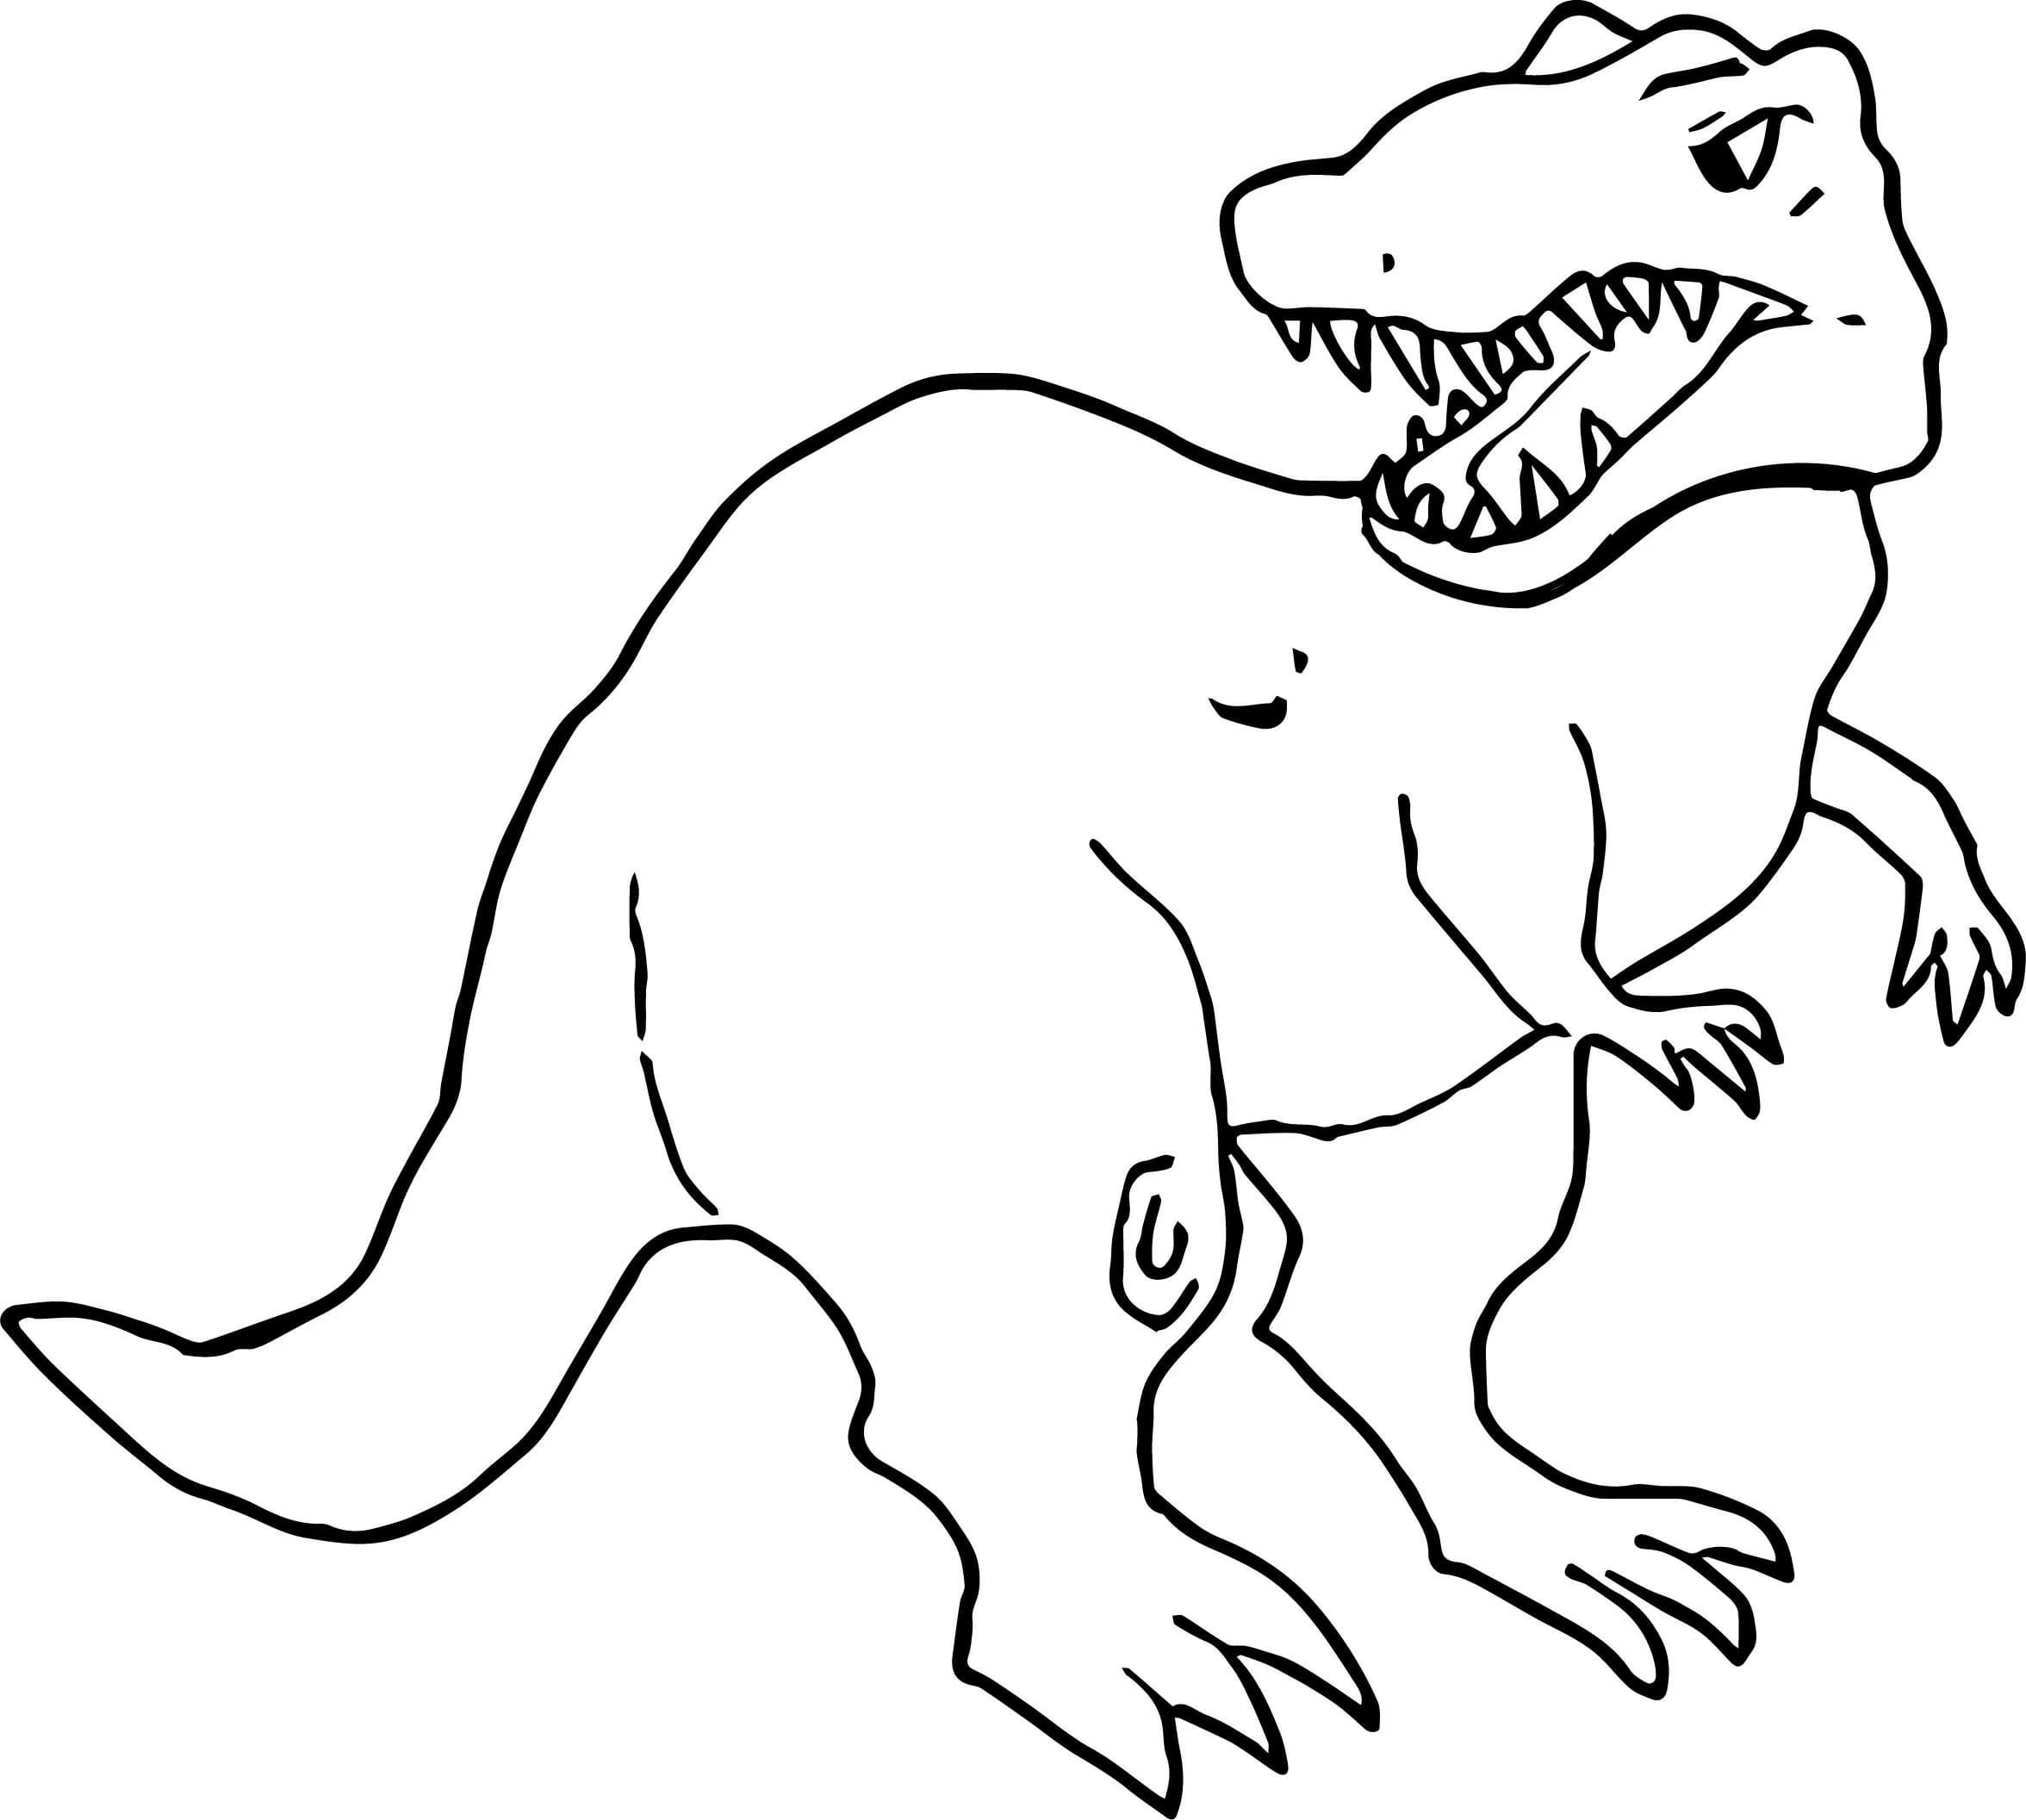 Para Colorear T-rex Un antiguo habitante de nuestro planeta